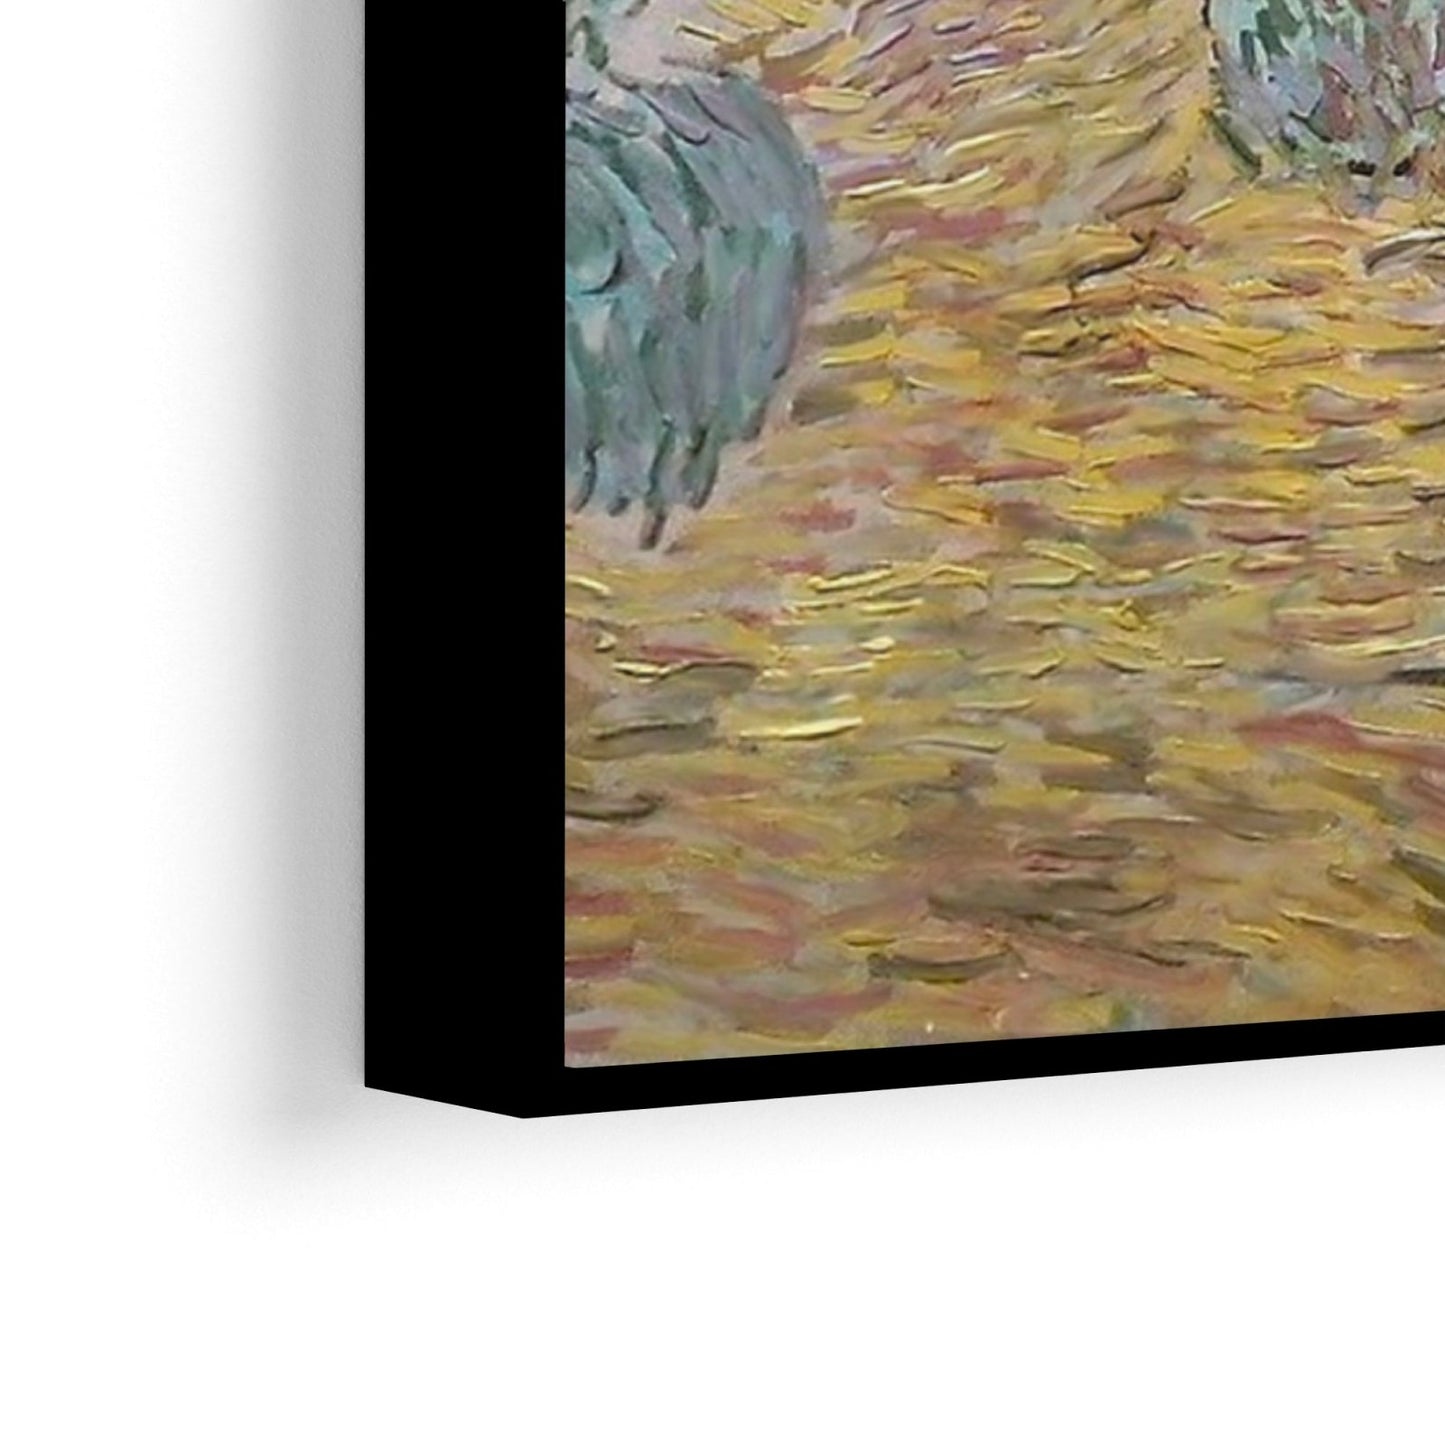 Baltas kotedžas tarp alyvmedžių, Vincentas Van Gogas